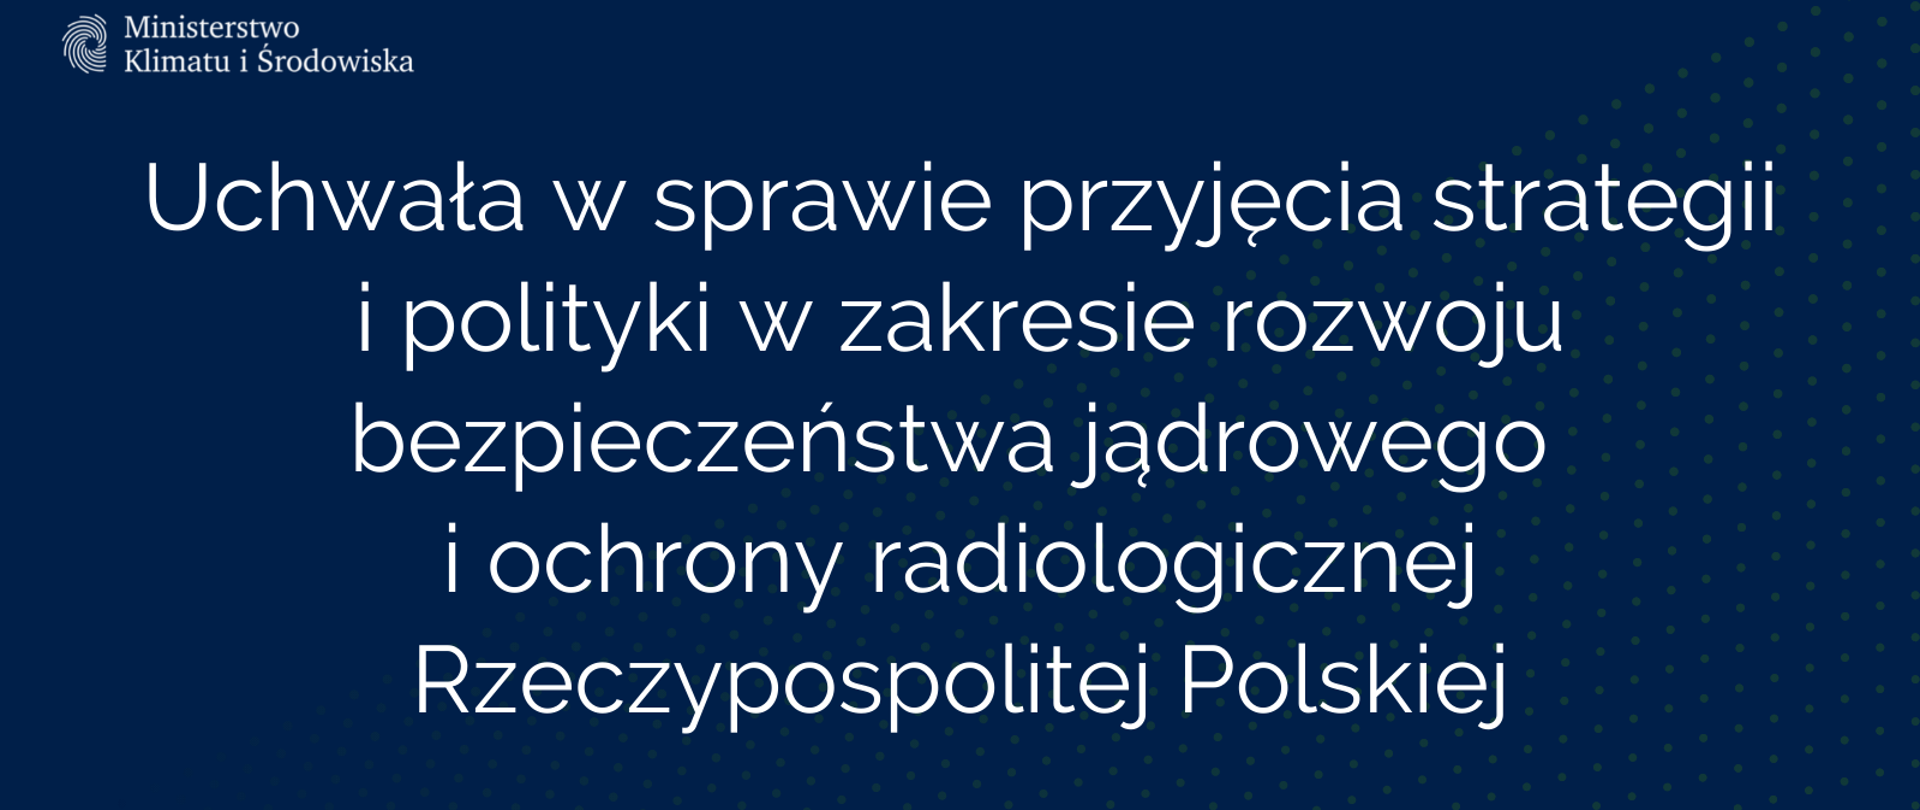 Uchwała w sprawie przyjęcia strategii i polityki w zakresie rozwoju bezpieczeństwa jądrowego i ochrony radiologicznej Rzeczypospolitej Polskiej